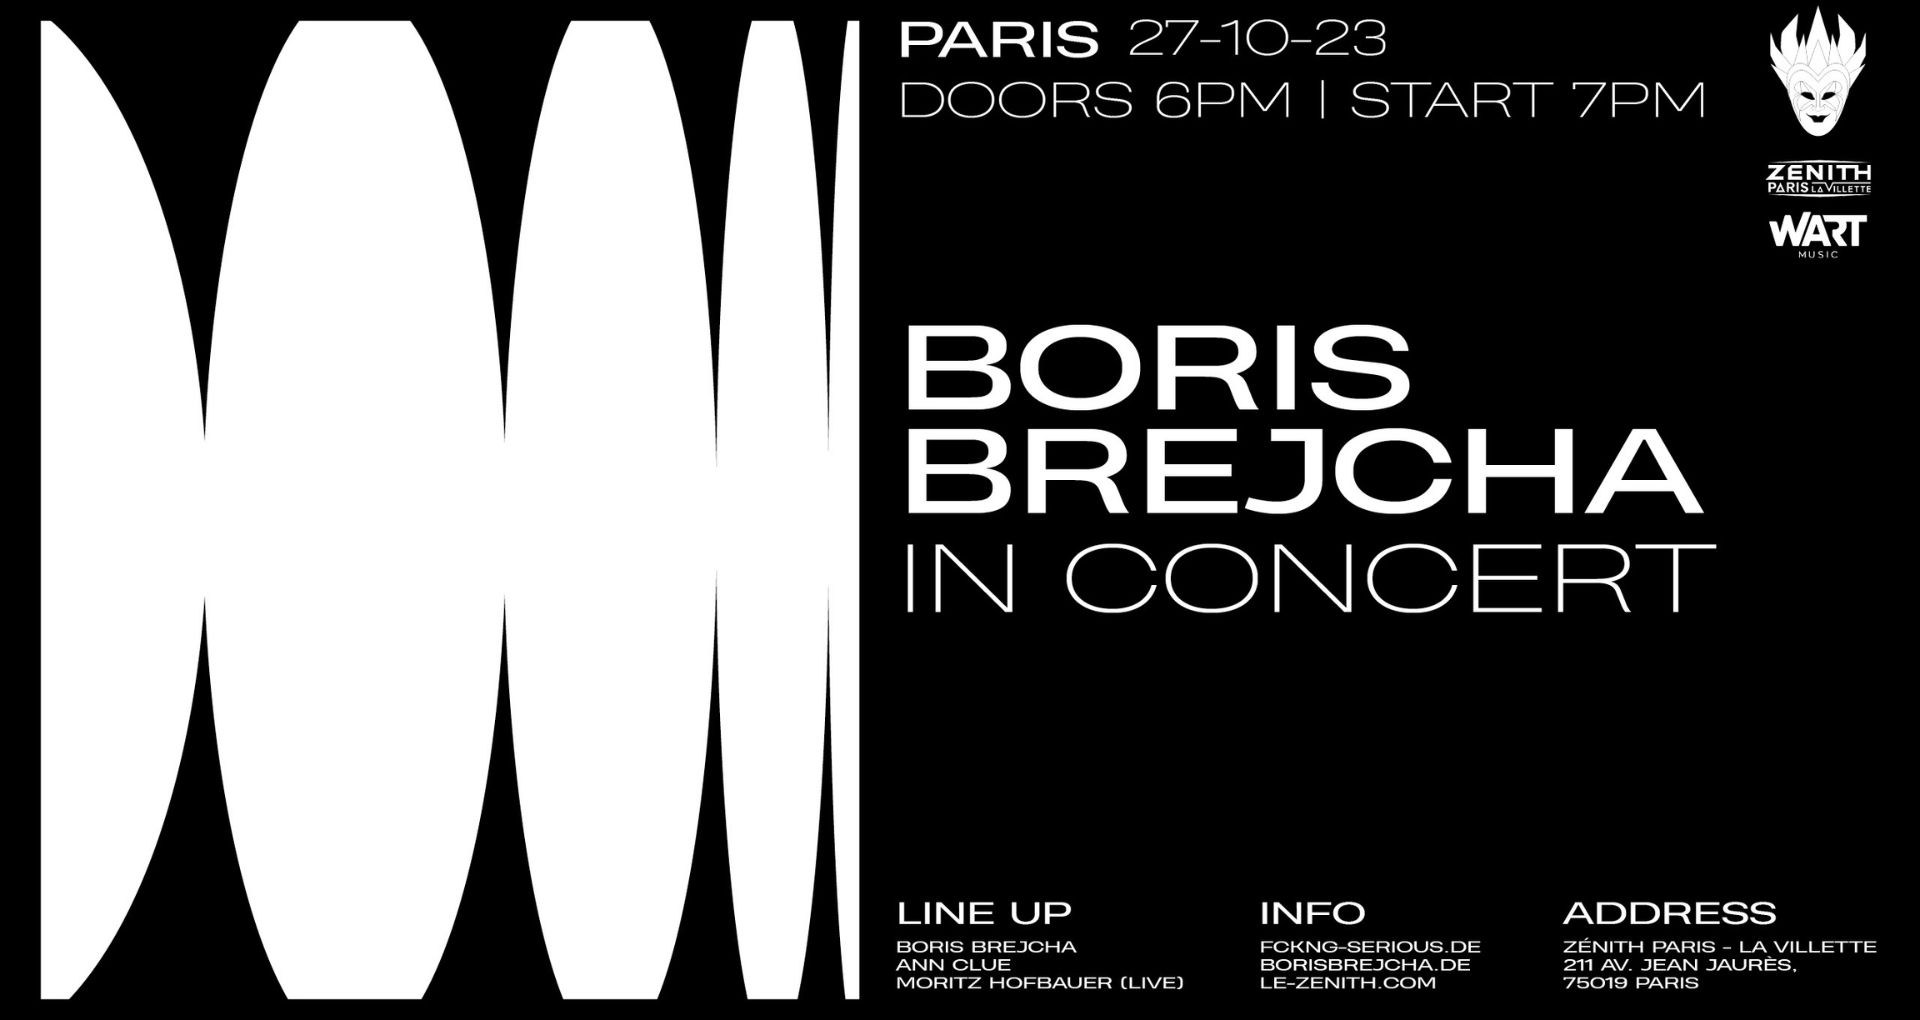 Affiche du concert de Boris Brejcha au Zénith